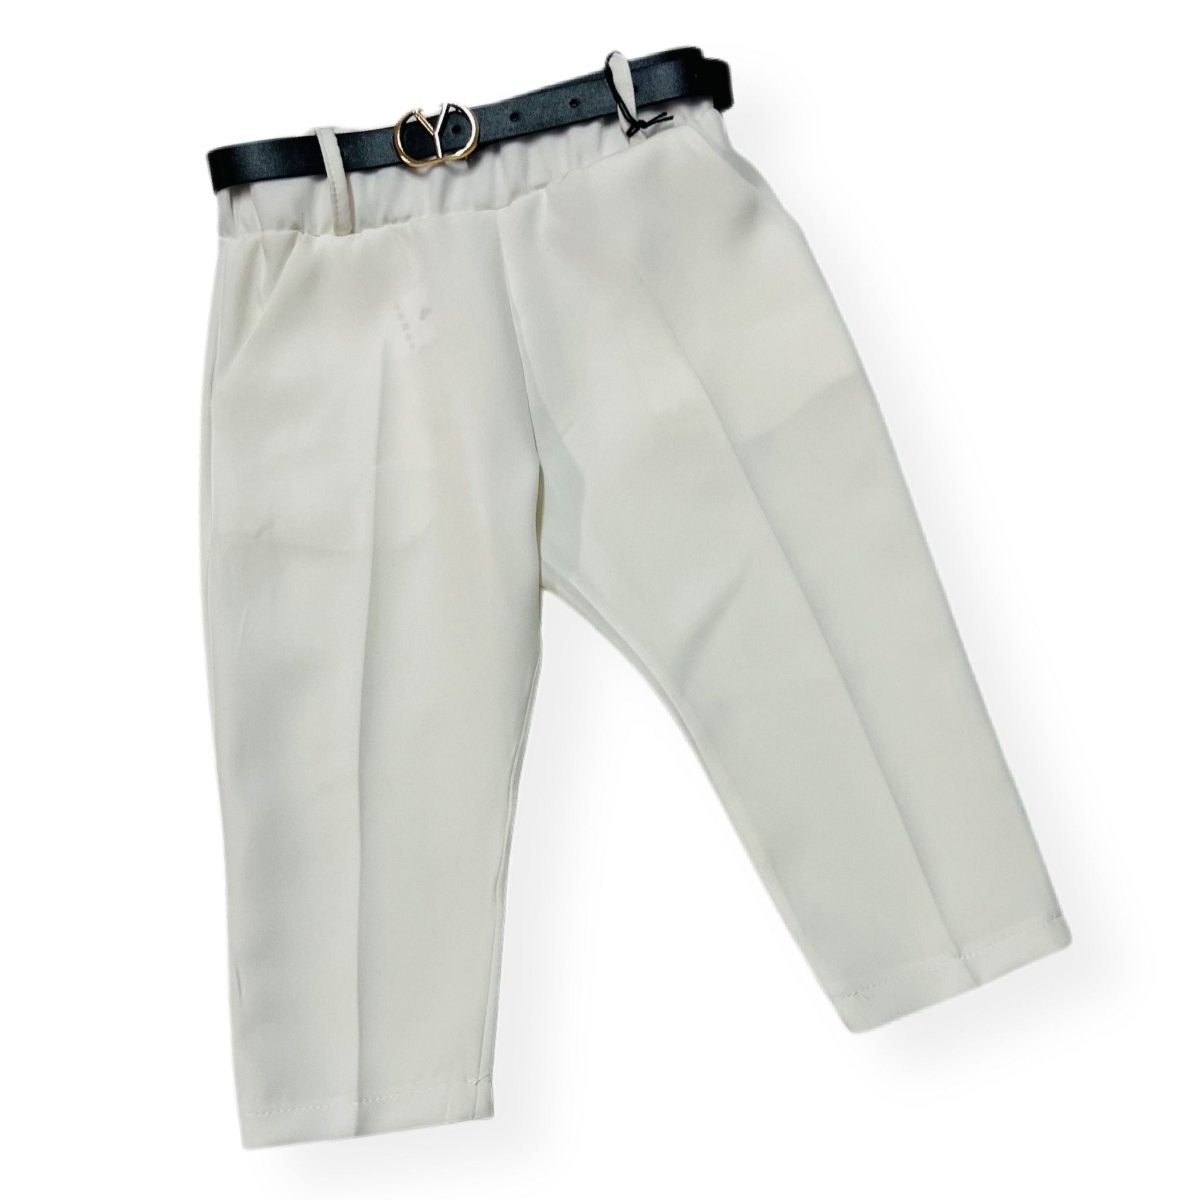 Pantalone Capri leggero Bimba - Mstore016 - Pantalone Bimba - Granada